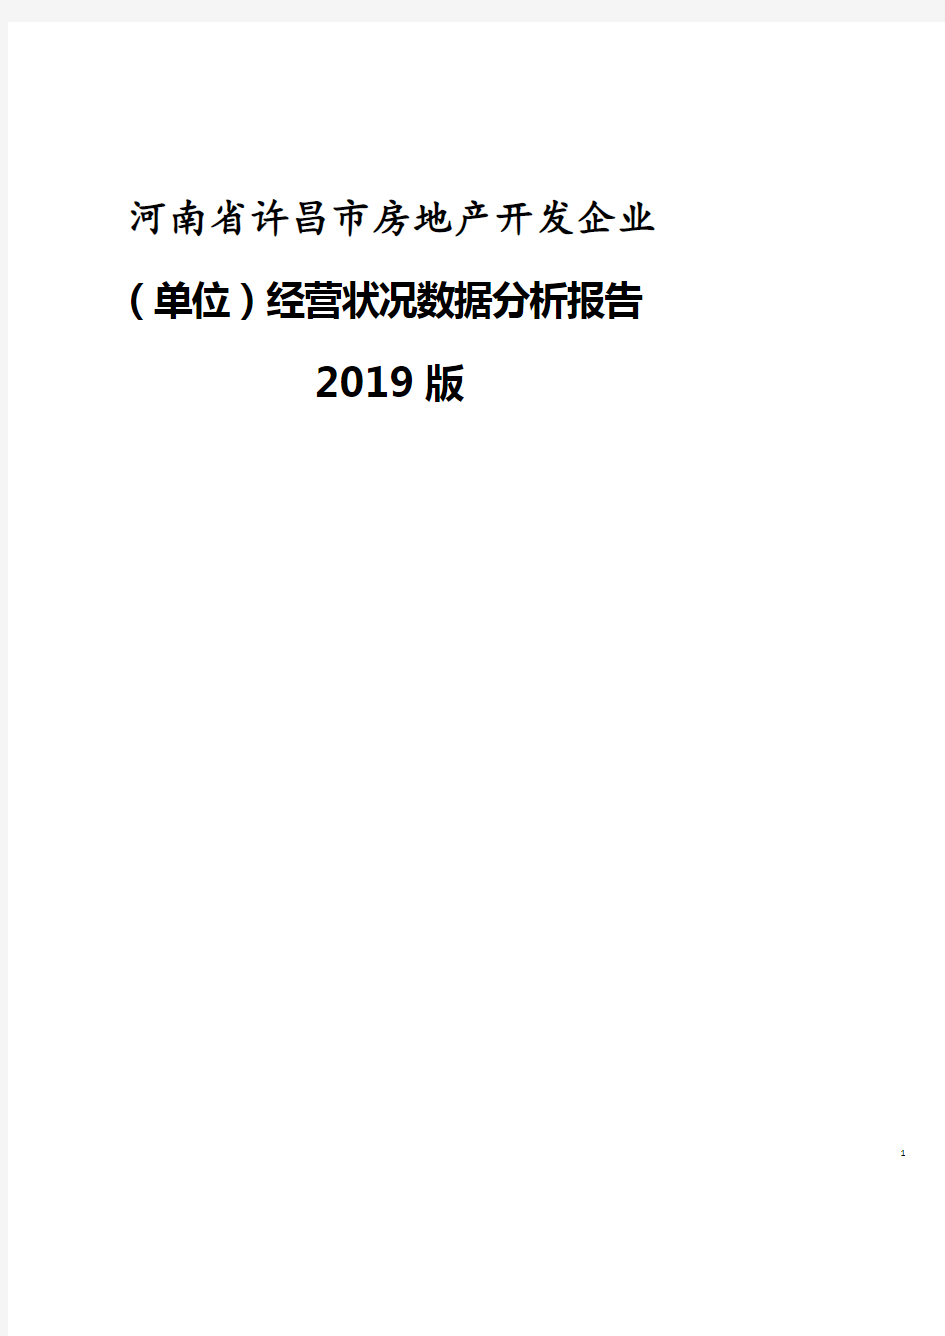 河南省许昌市房地产开发企业(单位)经营状况数据分析报告2019版.pdf